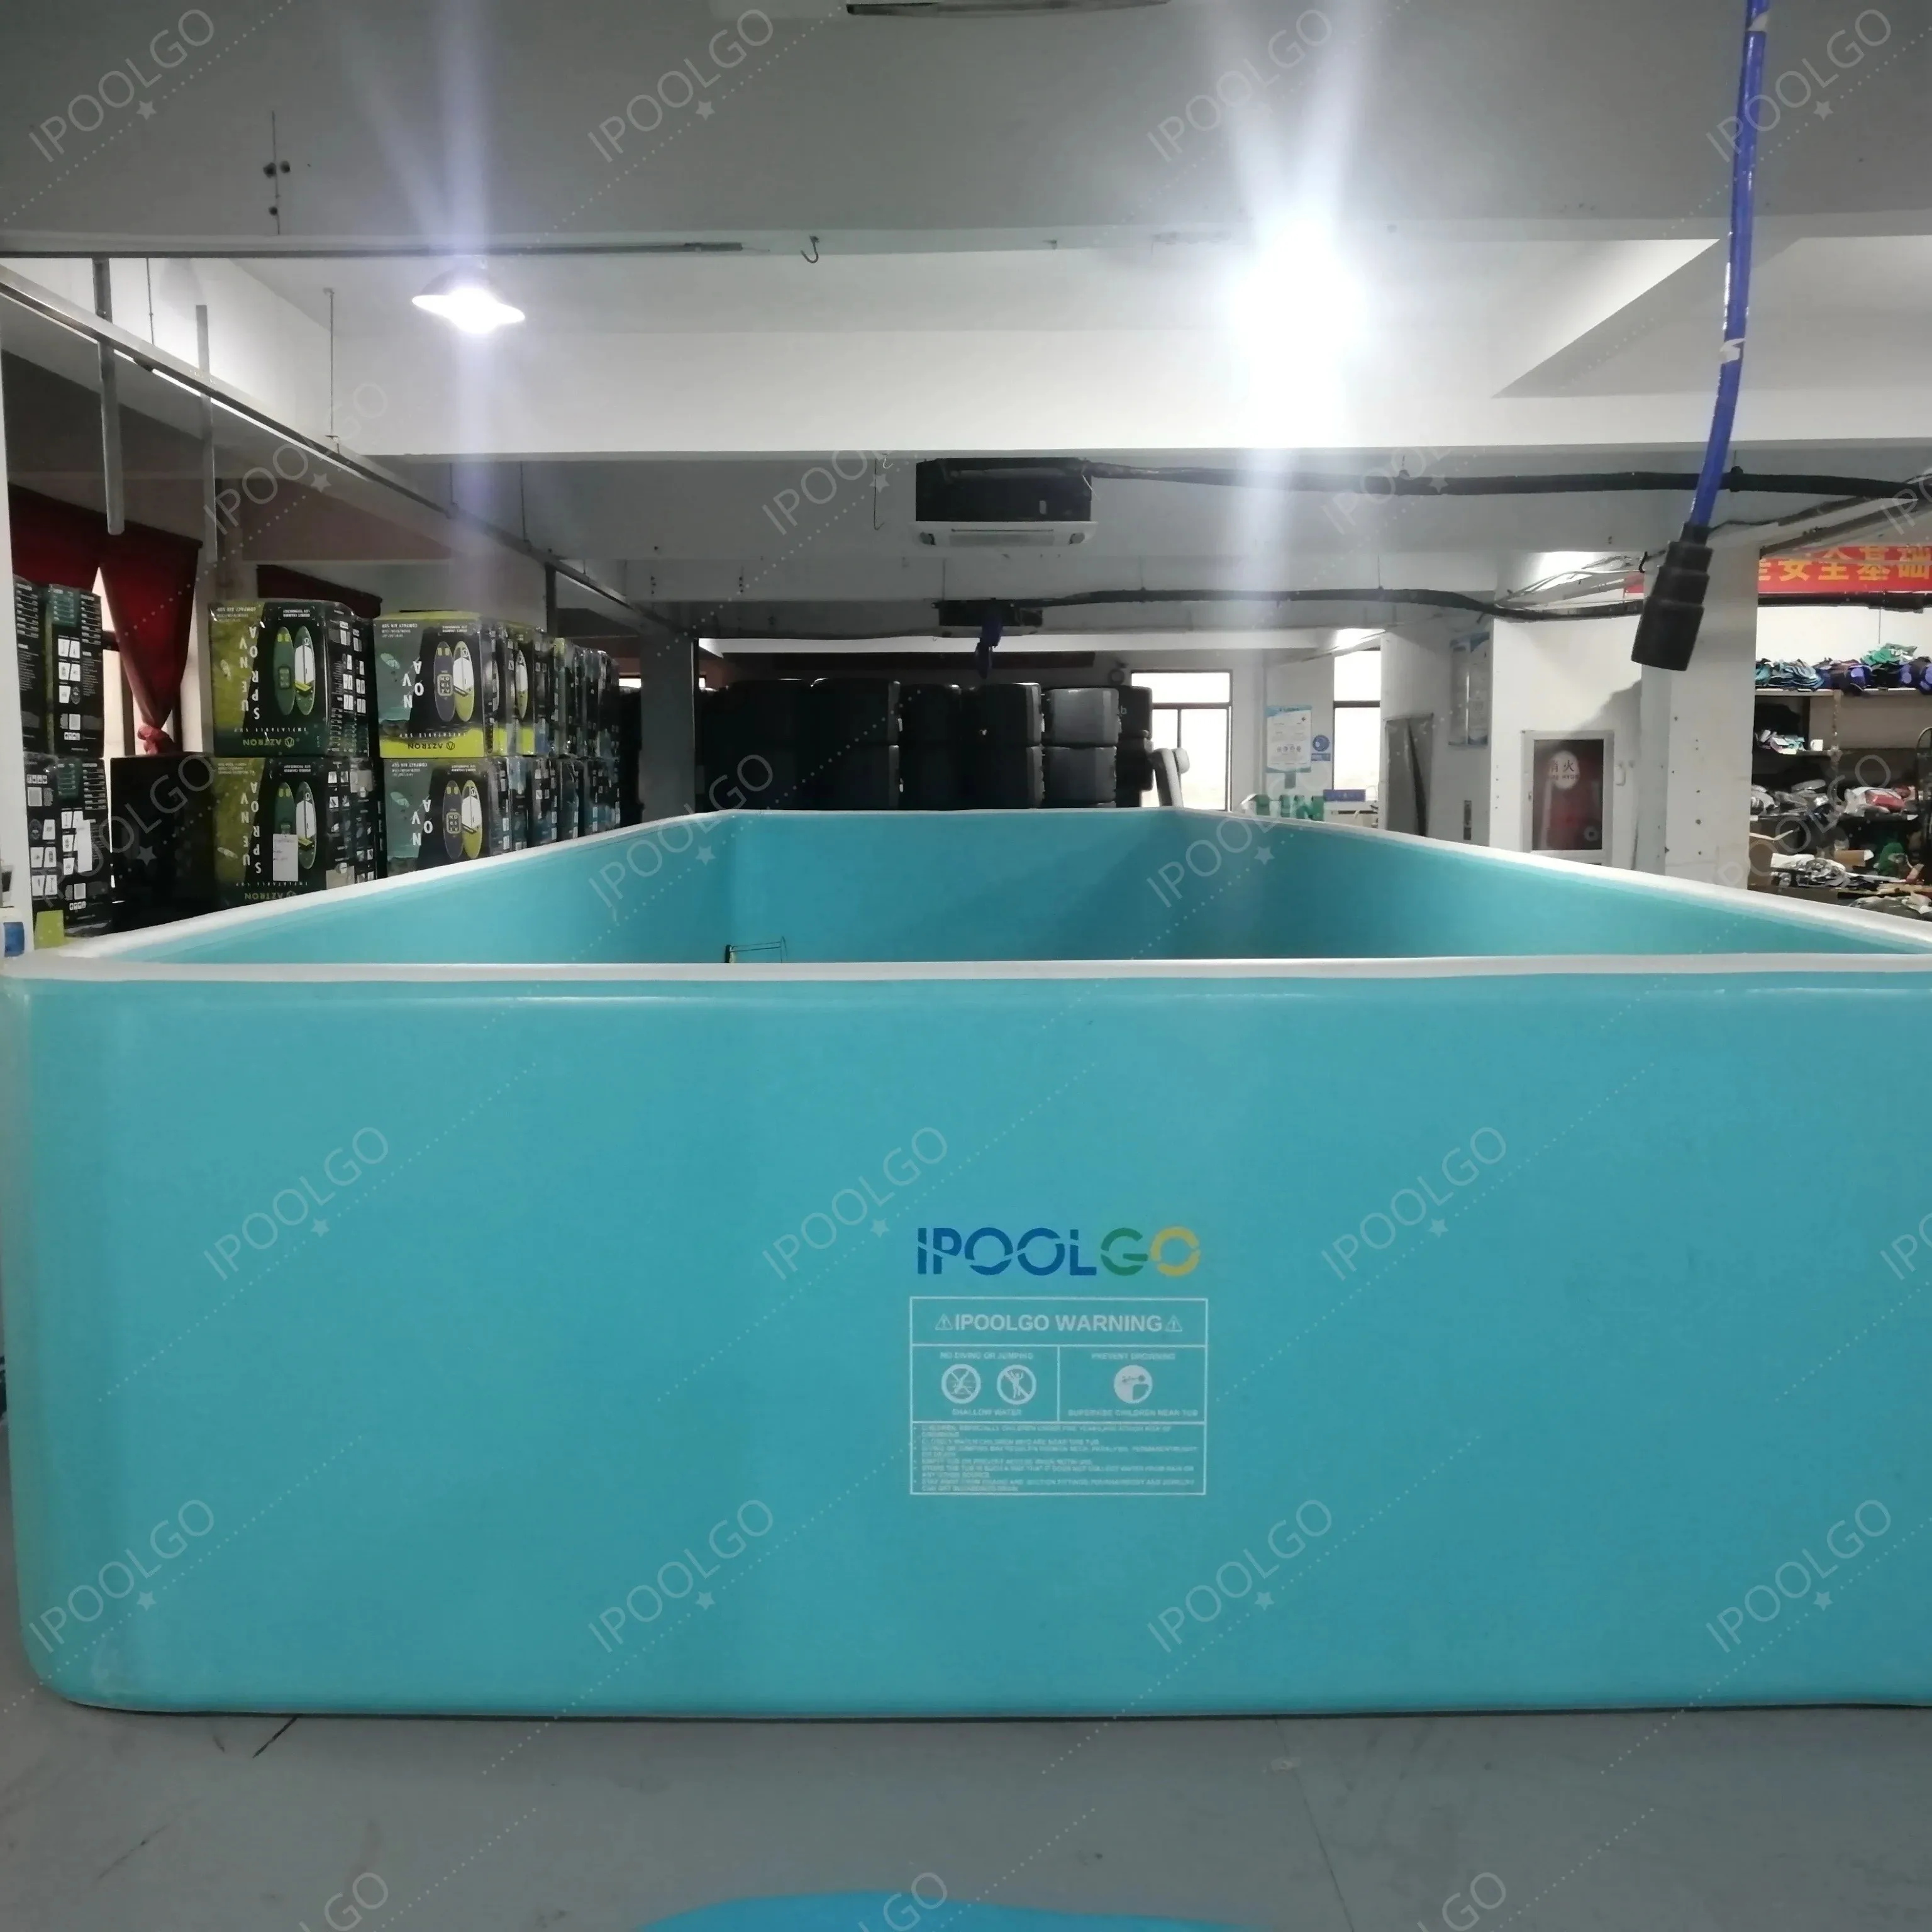 Ipoolgo mükemmel tasarım mavi renk açık için filtre pompası ile yüksek mukavemetli dikdörtgen havuz